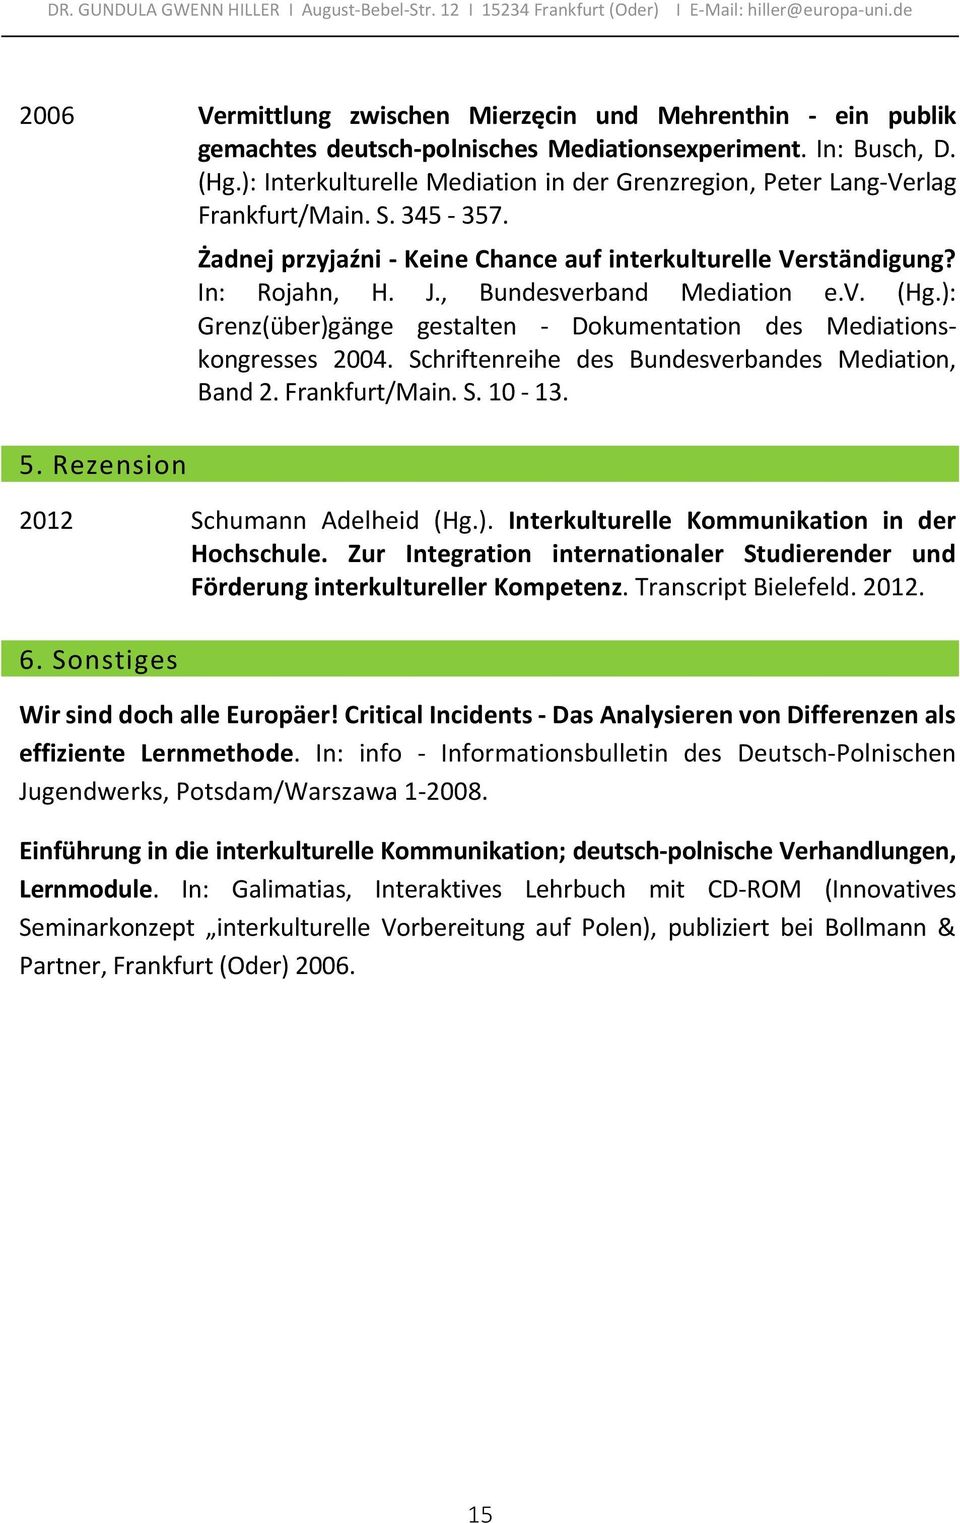 , Bundesverband Mediation e.v. (Hg.): Grenz(über)gänge gestalten - Dokumentation des Mediationskongresses 2004. Schriftenreihe des Bundesverbandes Mediation, Band 2. Frankfurt/Main. S. 10-13.